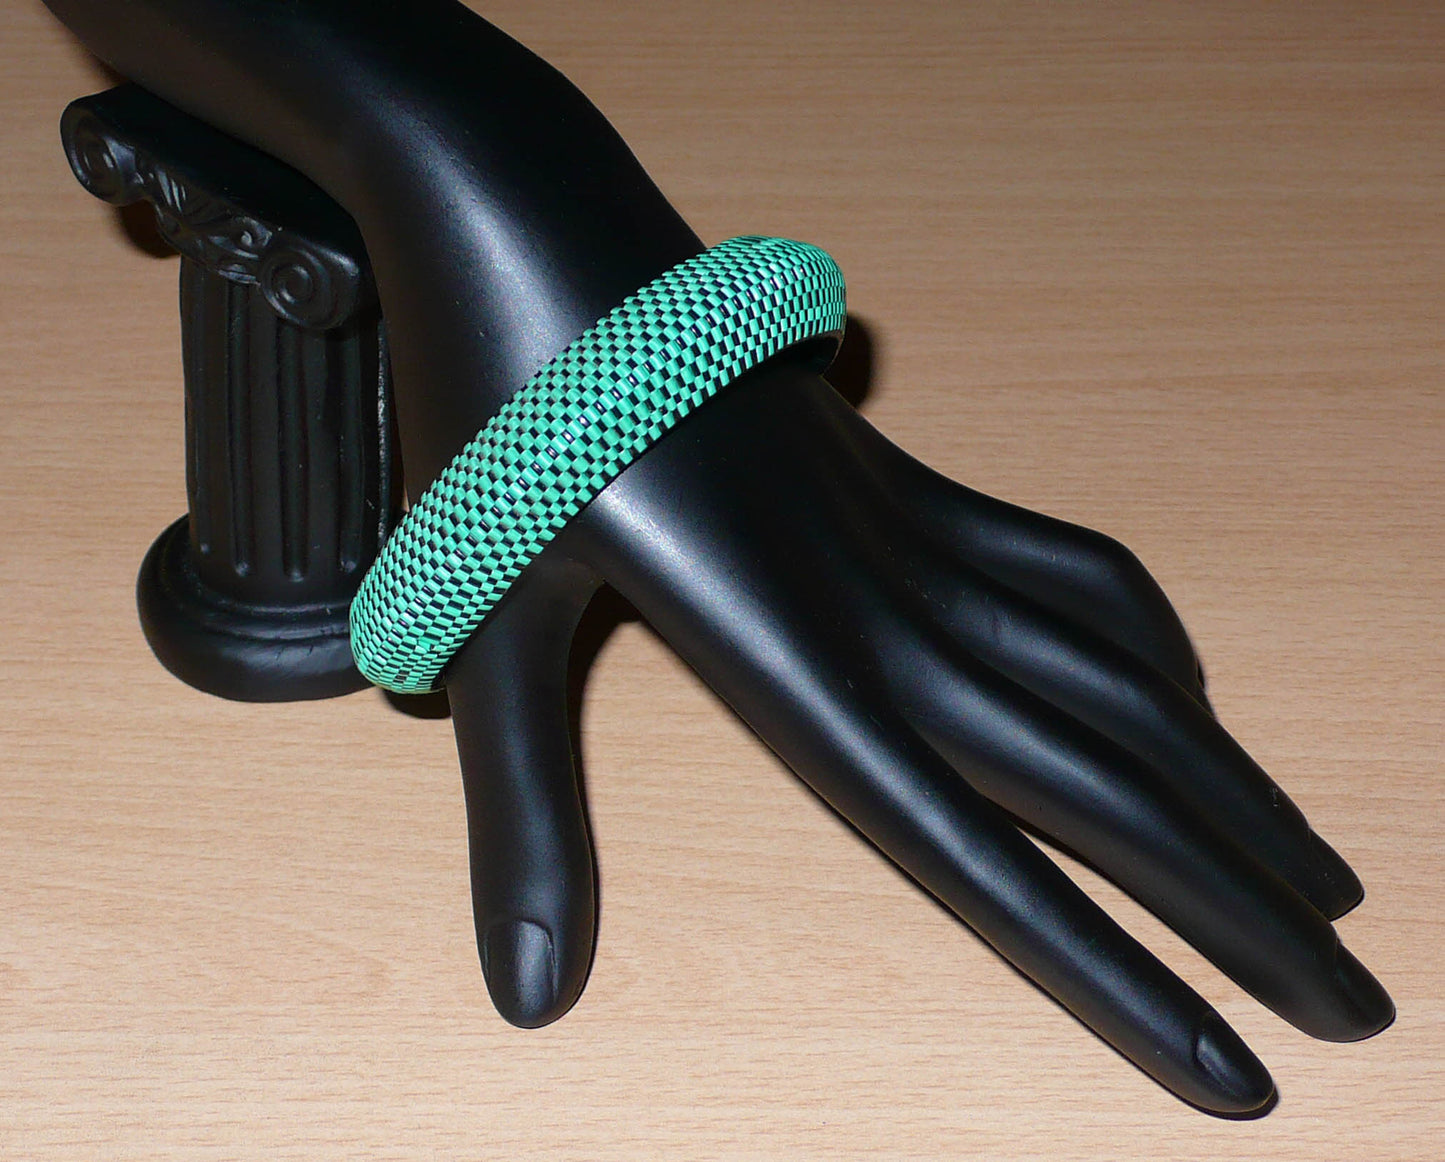 Bracelet africain épais à petits damiers tissés à partir de très fines bandes de plastique recyclé vert et noir.  Ce bracelet a une circonférence interne de 21,5 cm, un diamètre de 6,5 cm et une épaisseur de 1,5 cm.